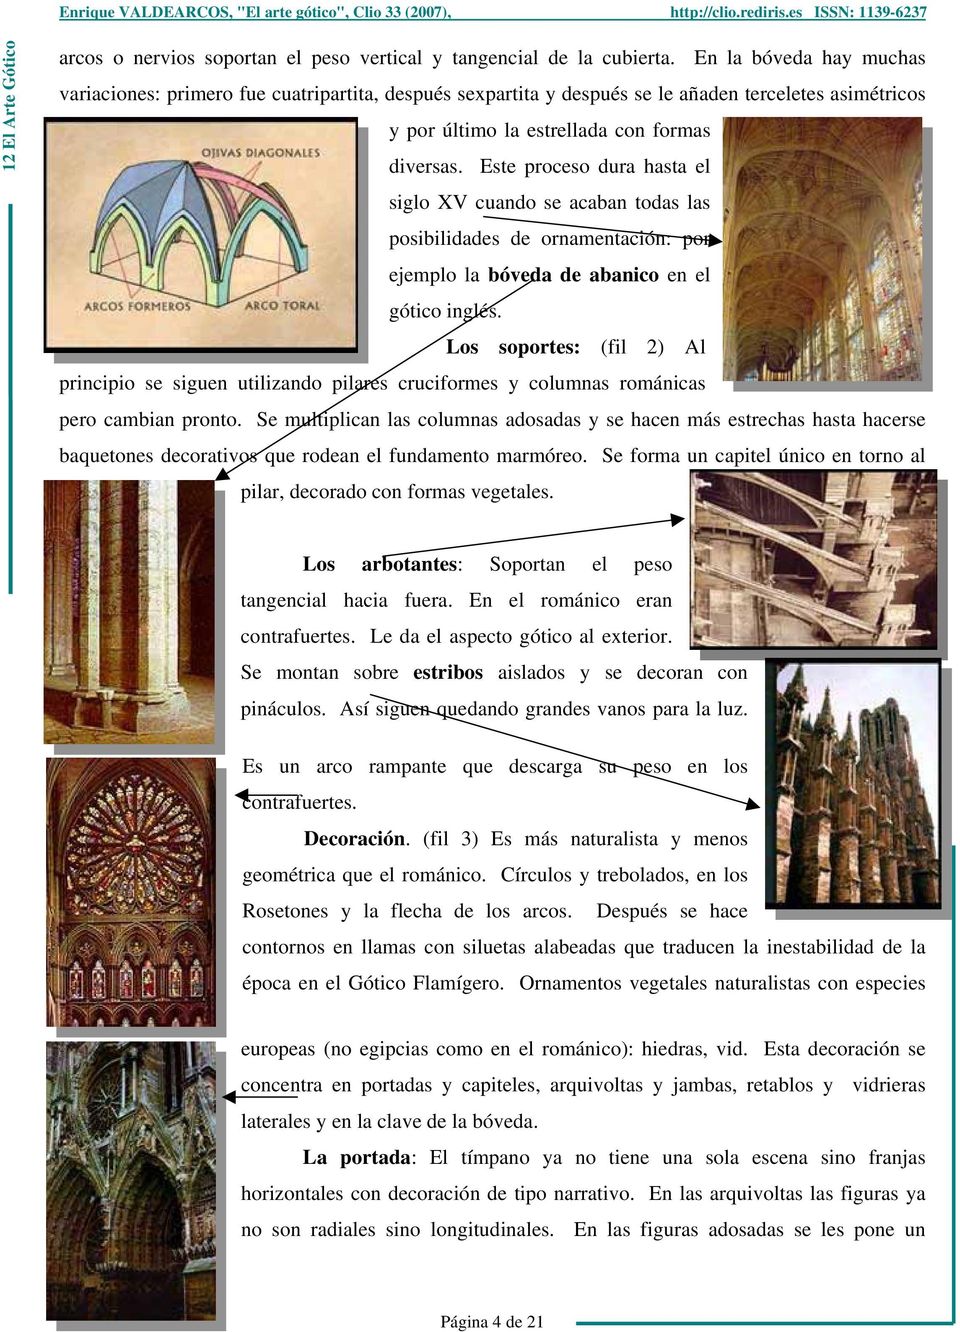 Este proceso dura hasta el siglo XV cuando se acaban todas las posibilidades de ornamentación: por ejemplo la bóveda de abanico en el gótico inglés.